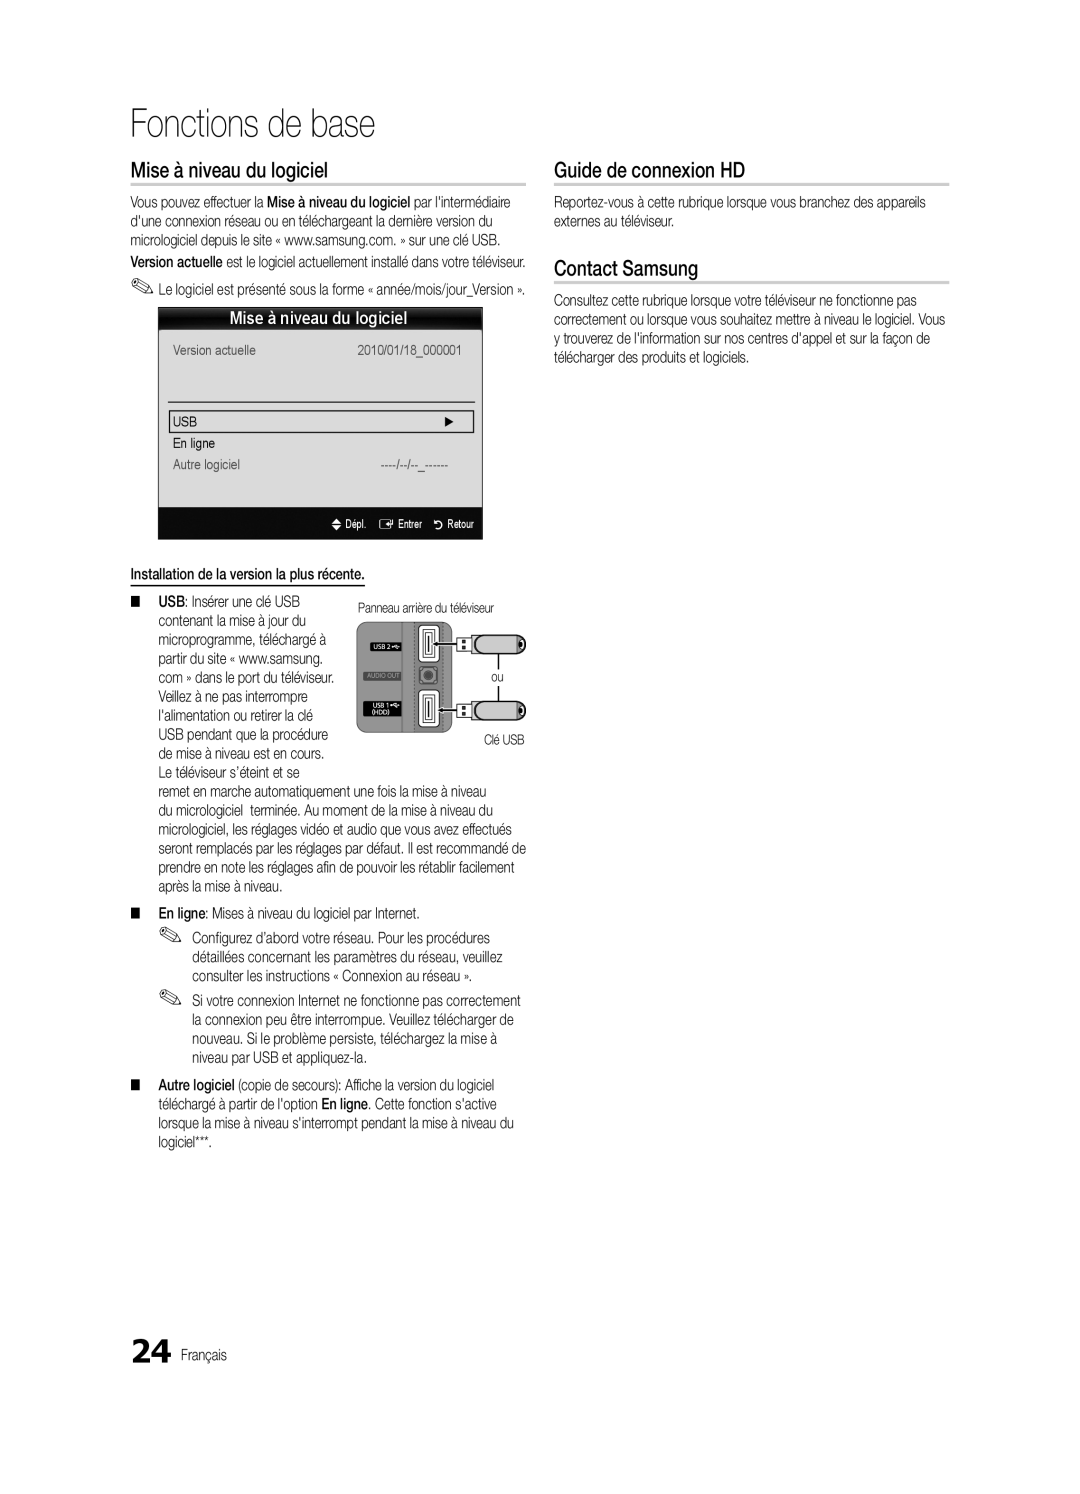 Samsung BN68-03004B-02 Mise à niveau du logiciel, Guide de connexion HD, Fonctions de base, Contact Samsung, En ligne 